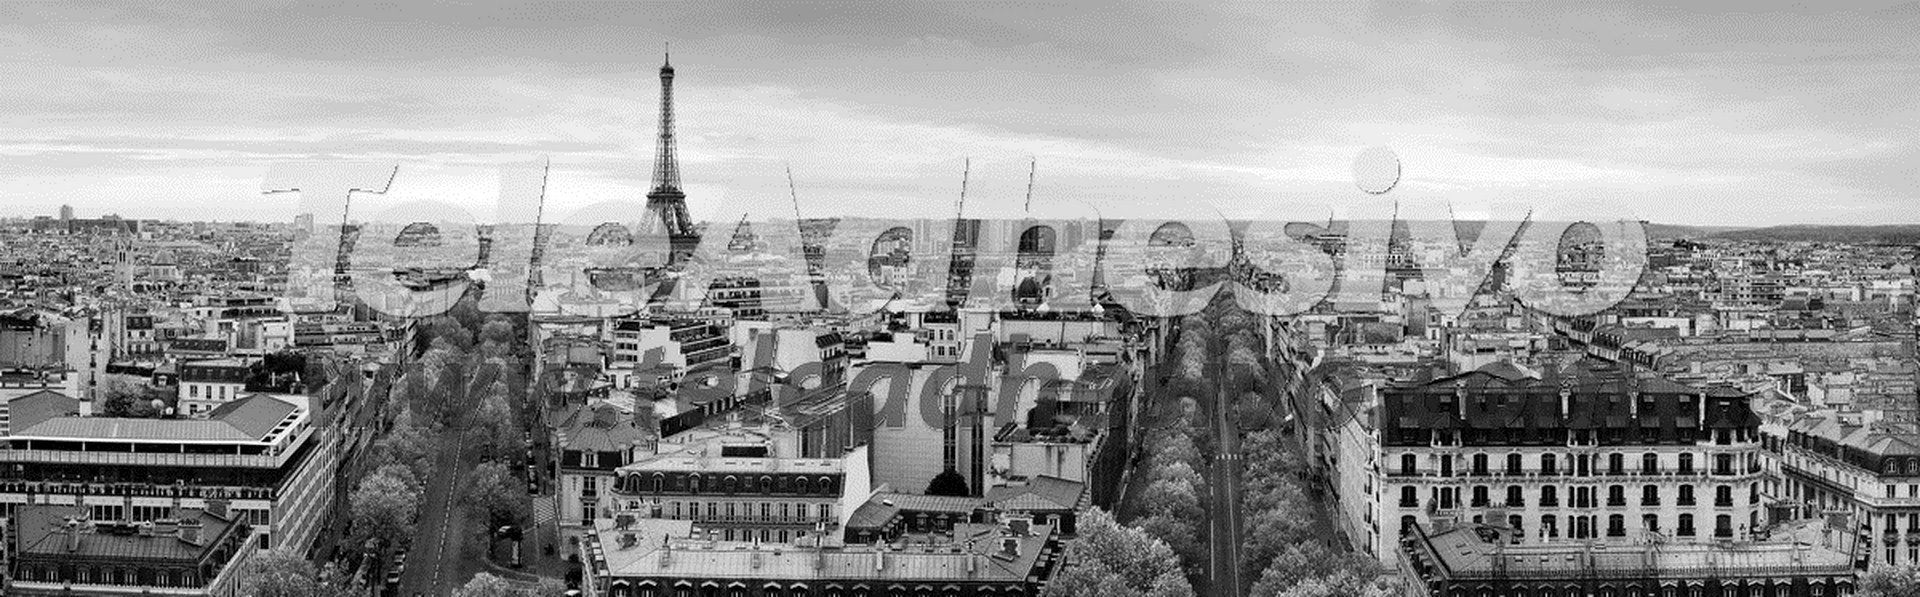 Fototapeten: Panoramisch von Paris in Schwarzweiss